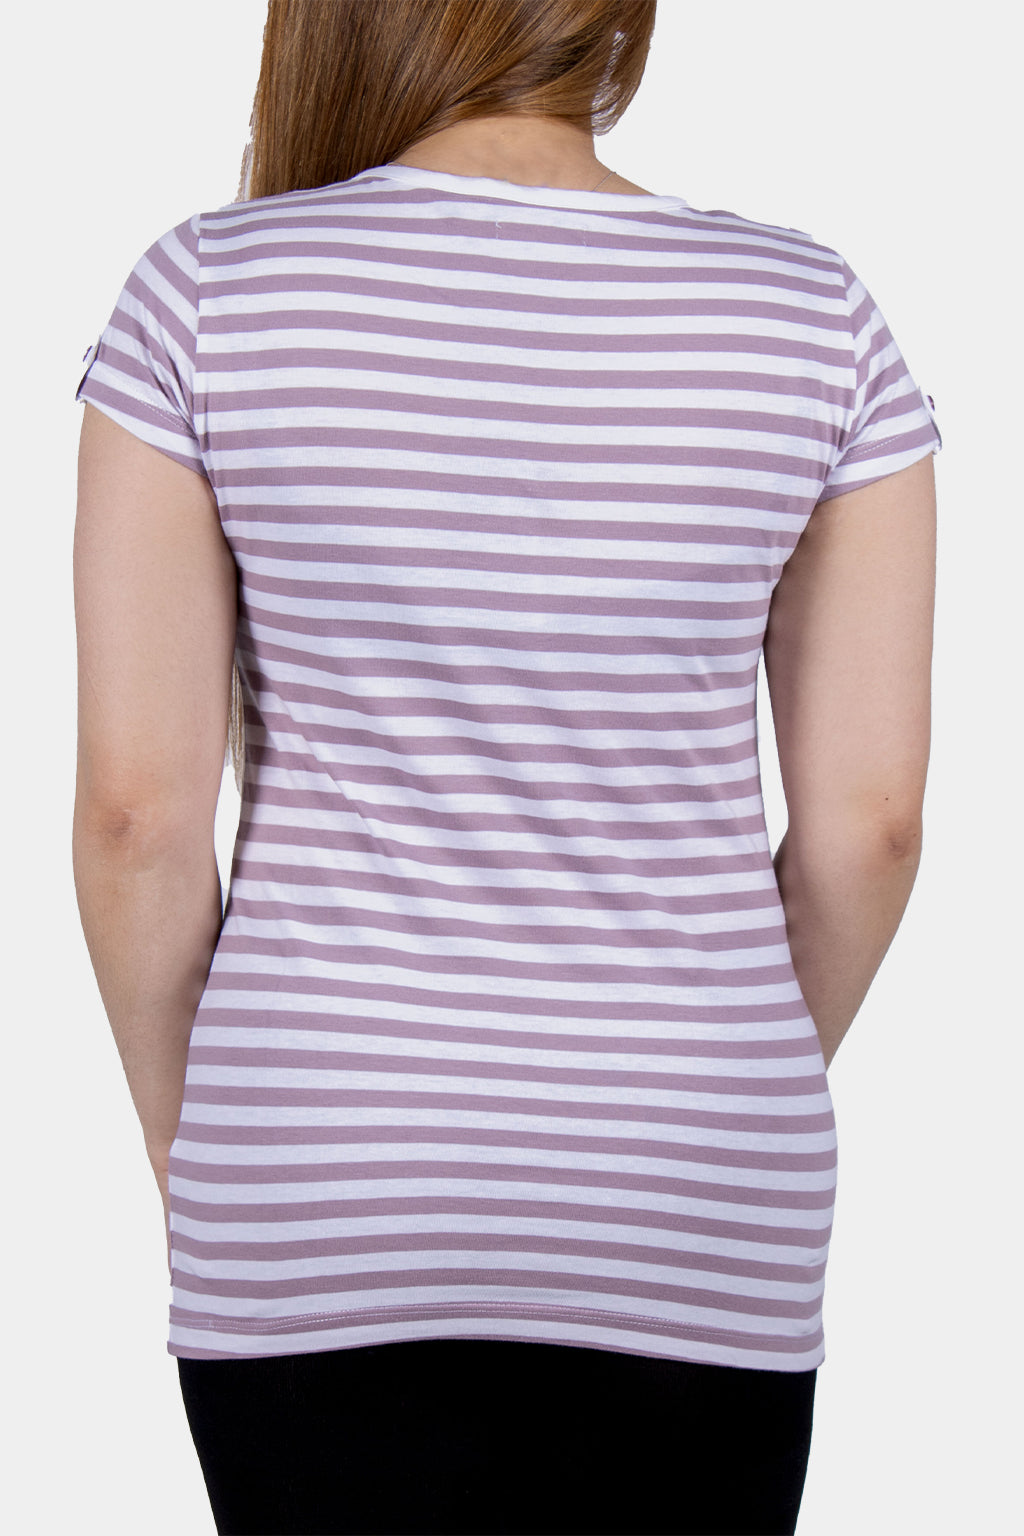 Bianco Nero - Women's V-neck Shirt Stripe Pattern